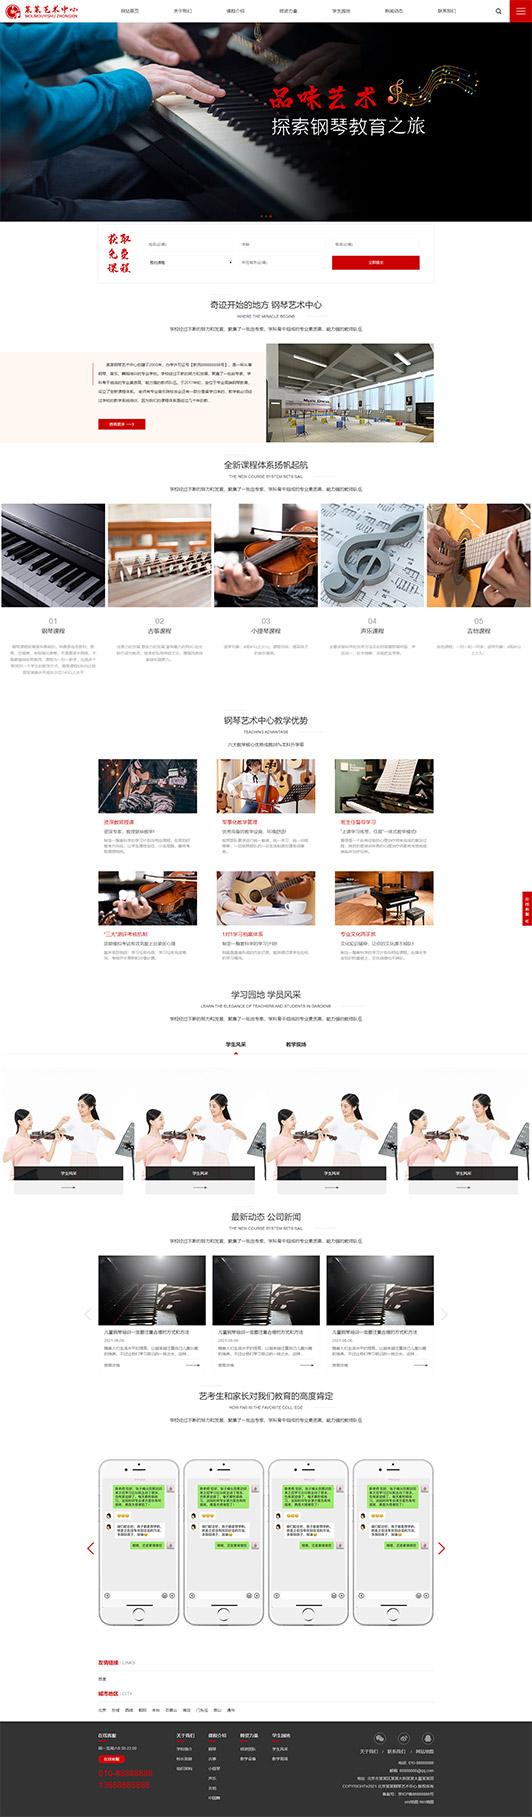 常德钢琴艺术培训公司响应式企业网站